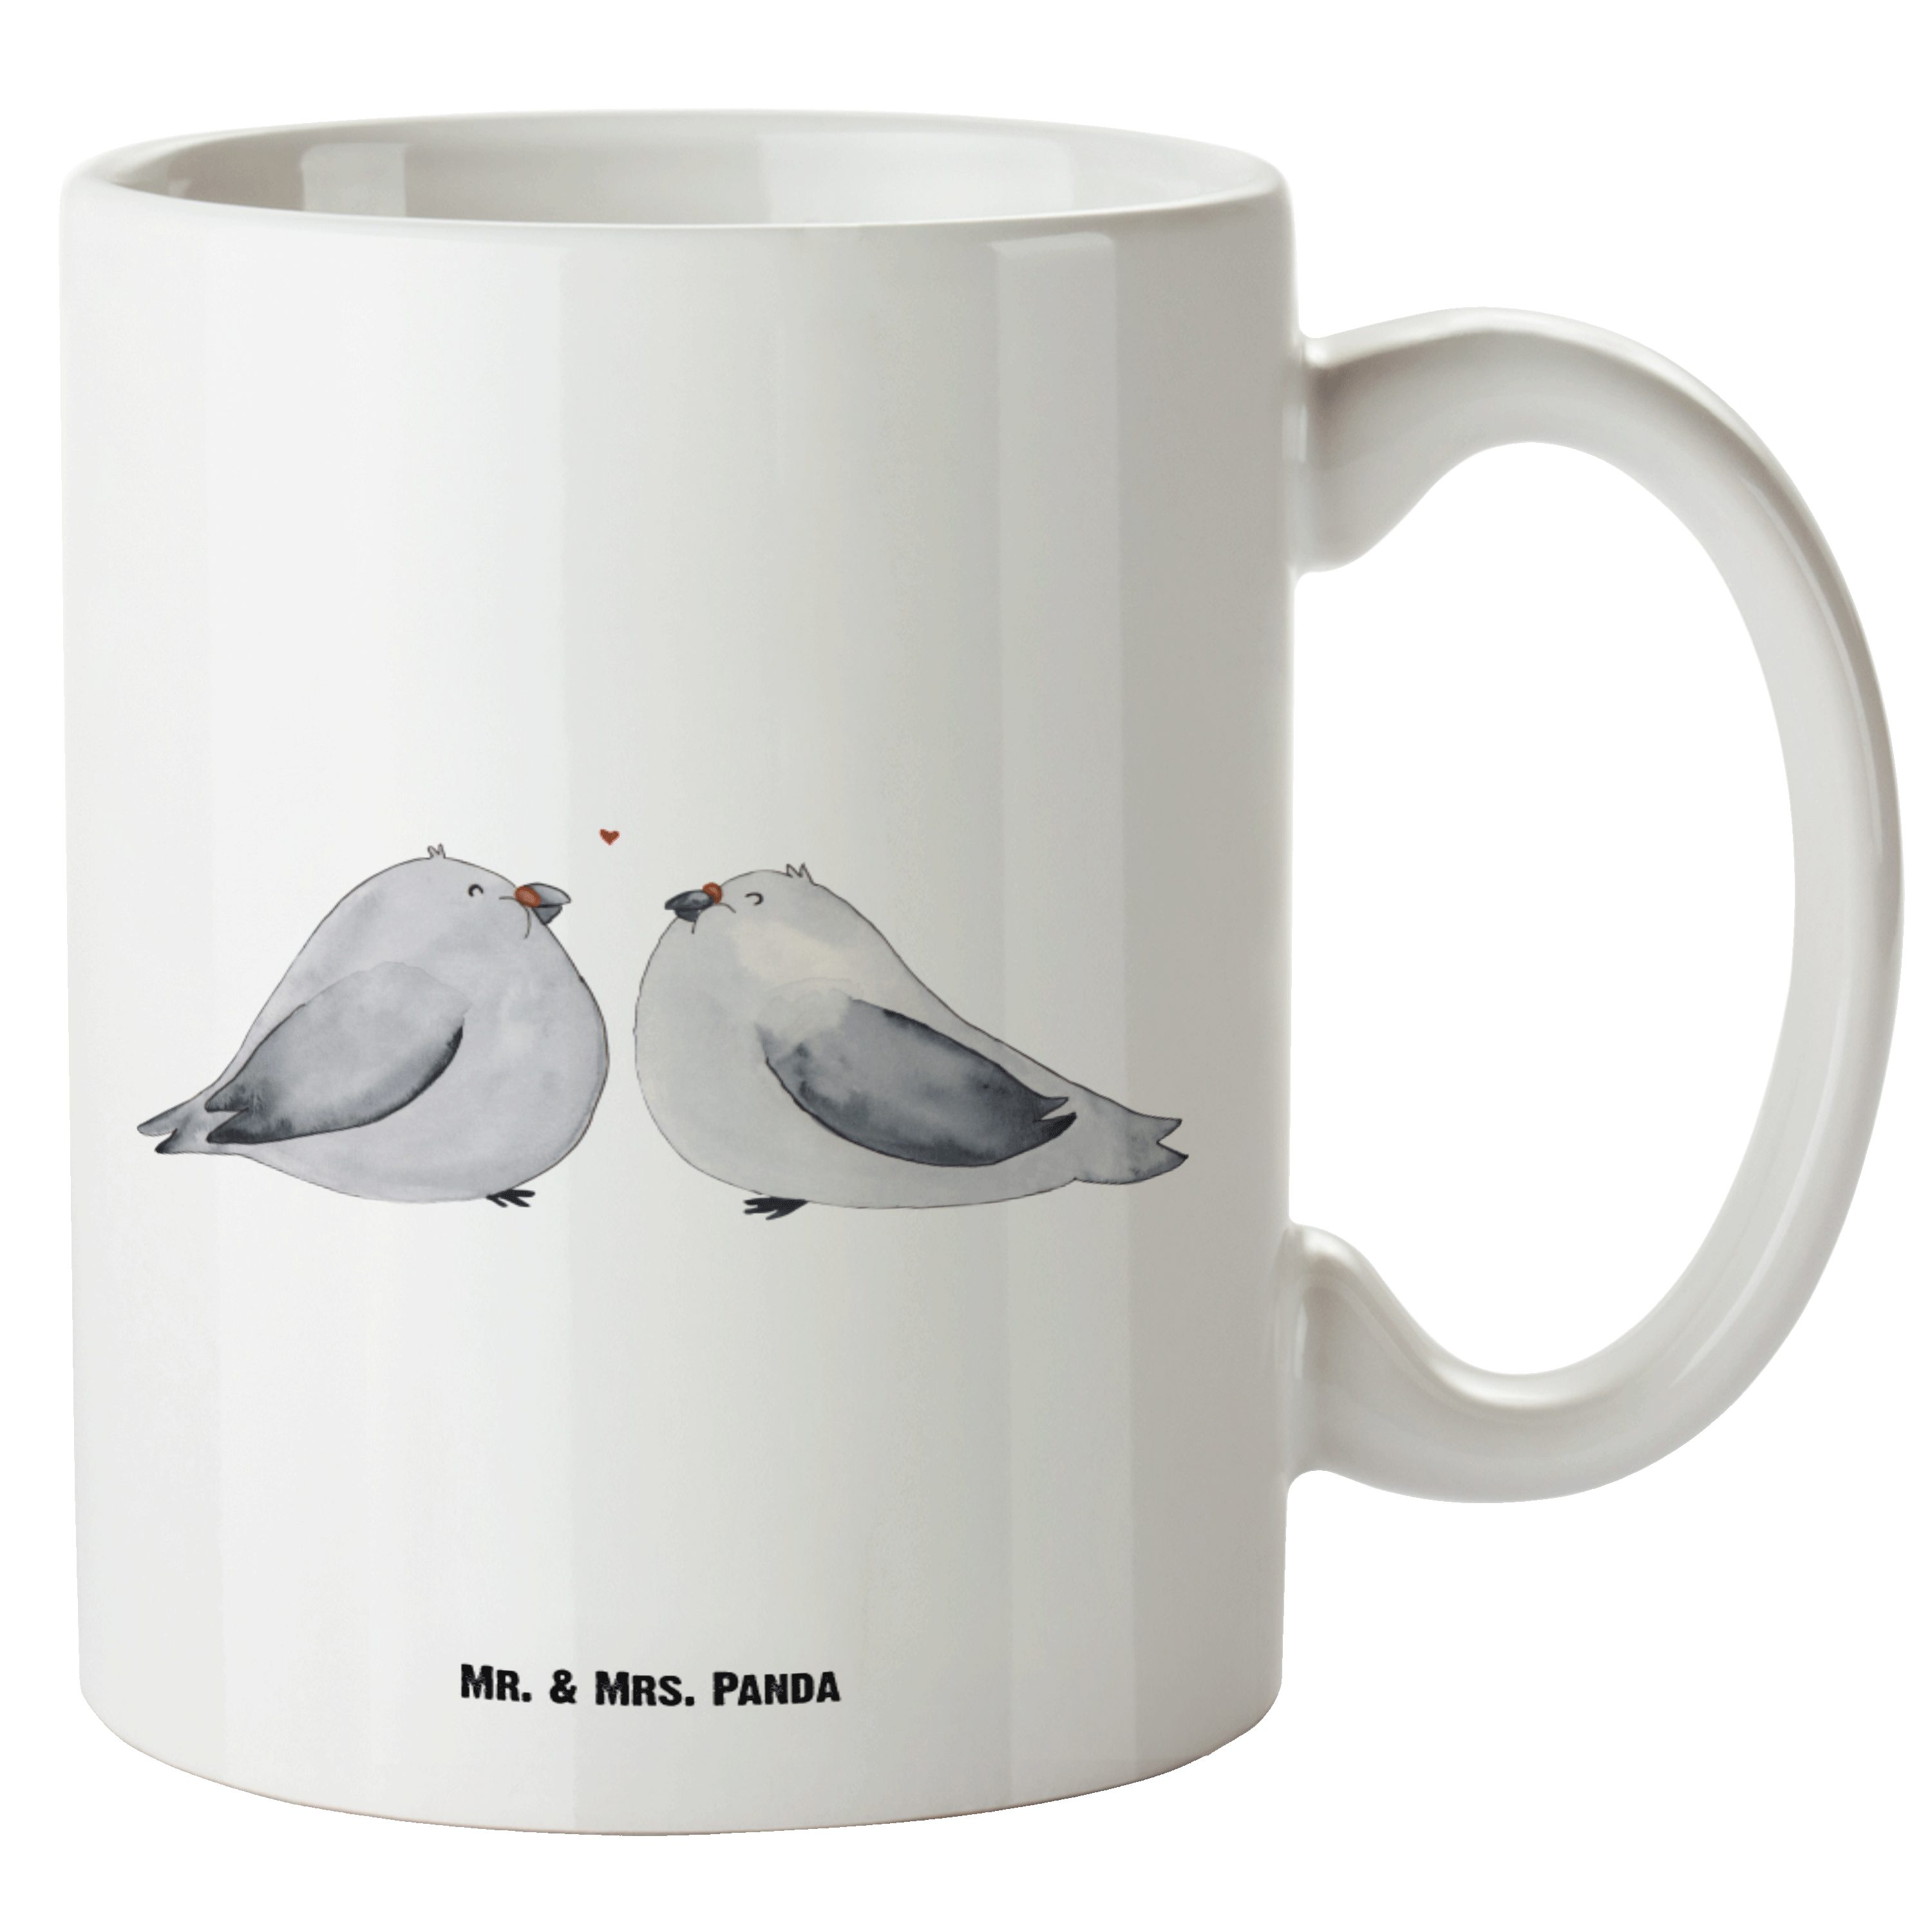 Mr. & Mrs. Panda Tasse Turteltauben Liebe - Weiß - Geschenk, Große Tasse, Jumbo Tasse, spülm, XL Tasse Keramik